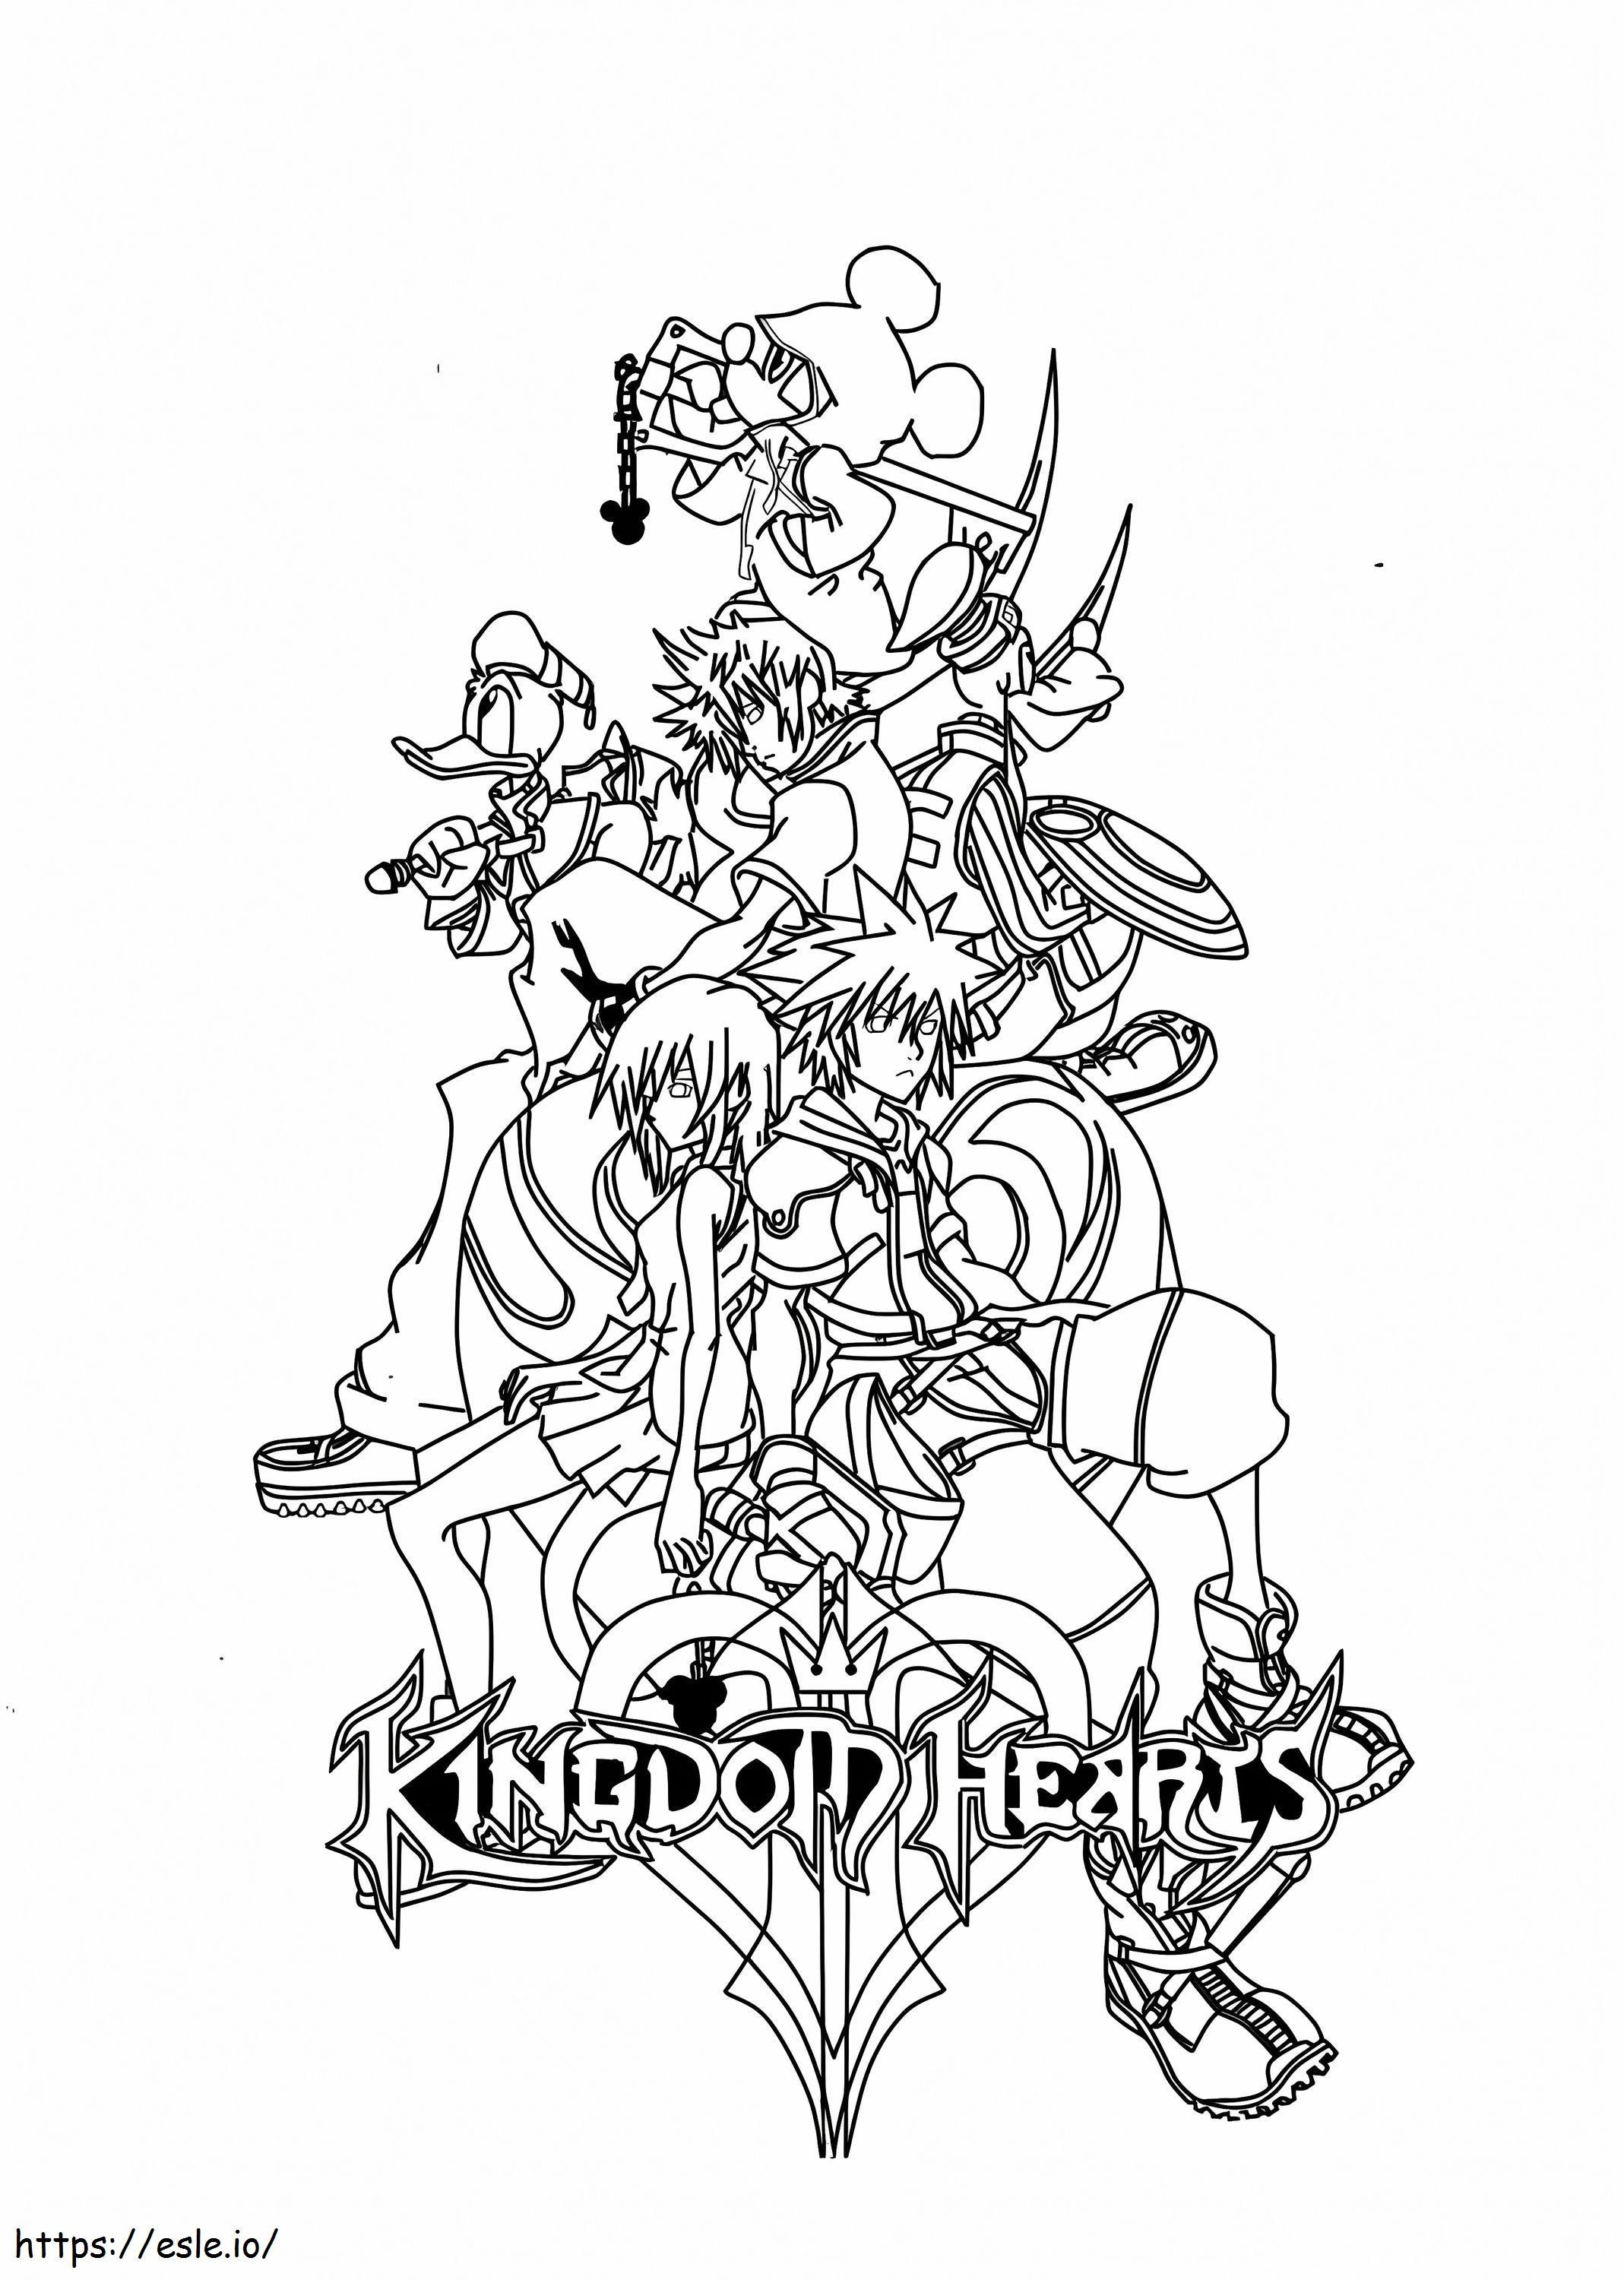 Personaggi di Kingdom Hearts da colorare